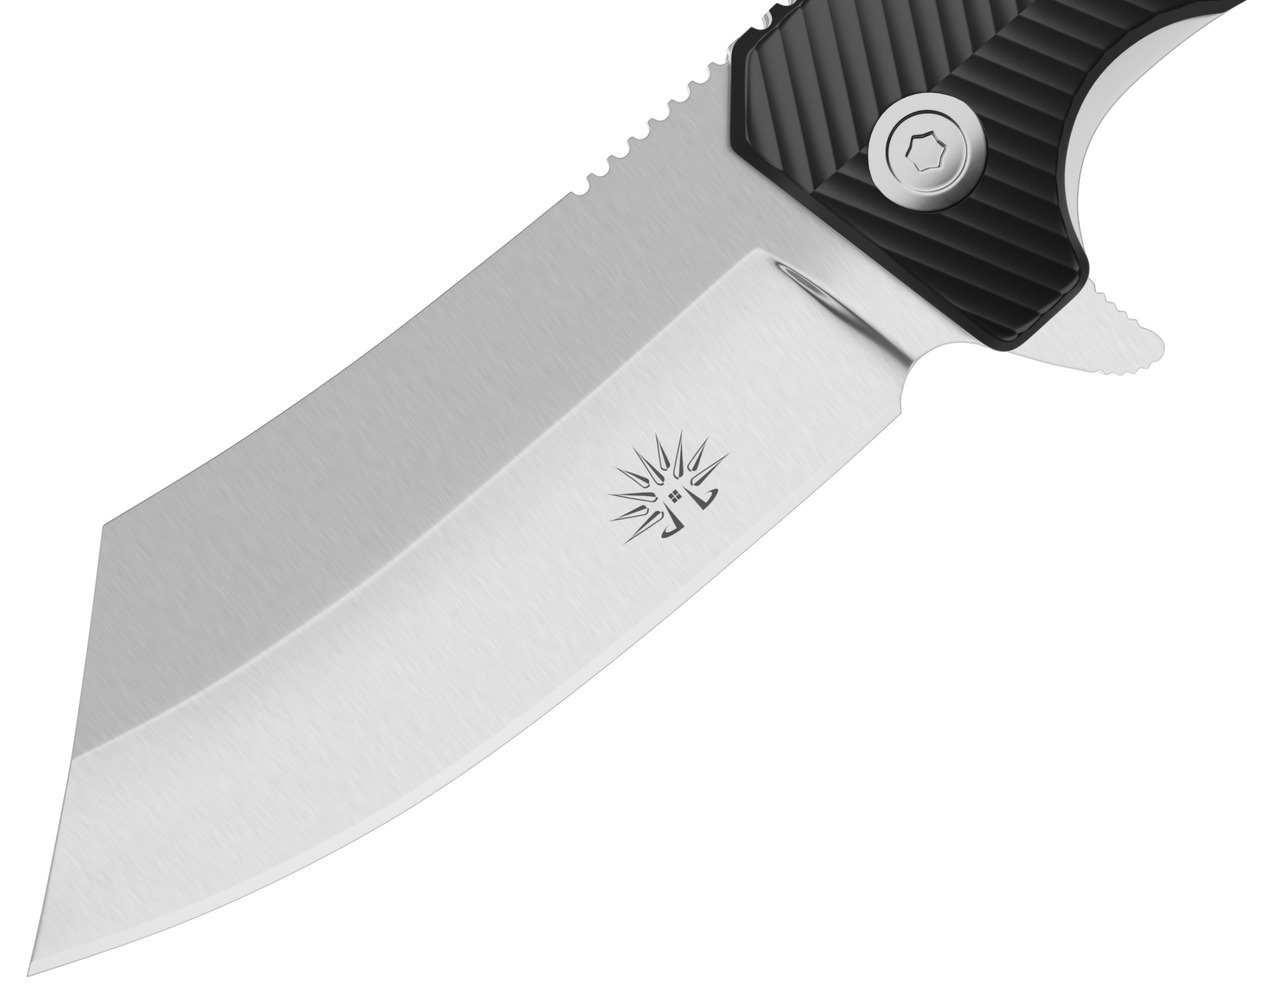 tanto-pocket-knife-for-sale